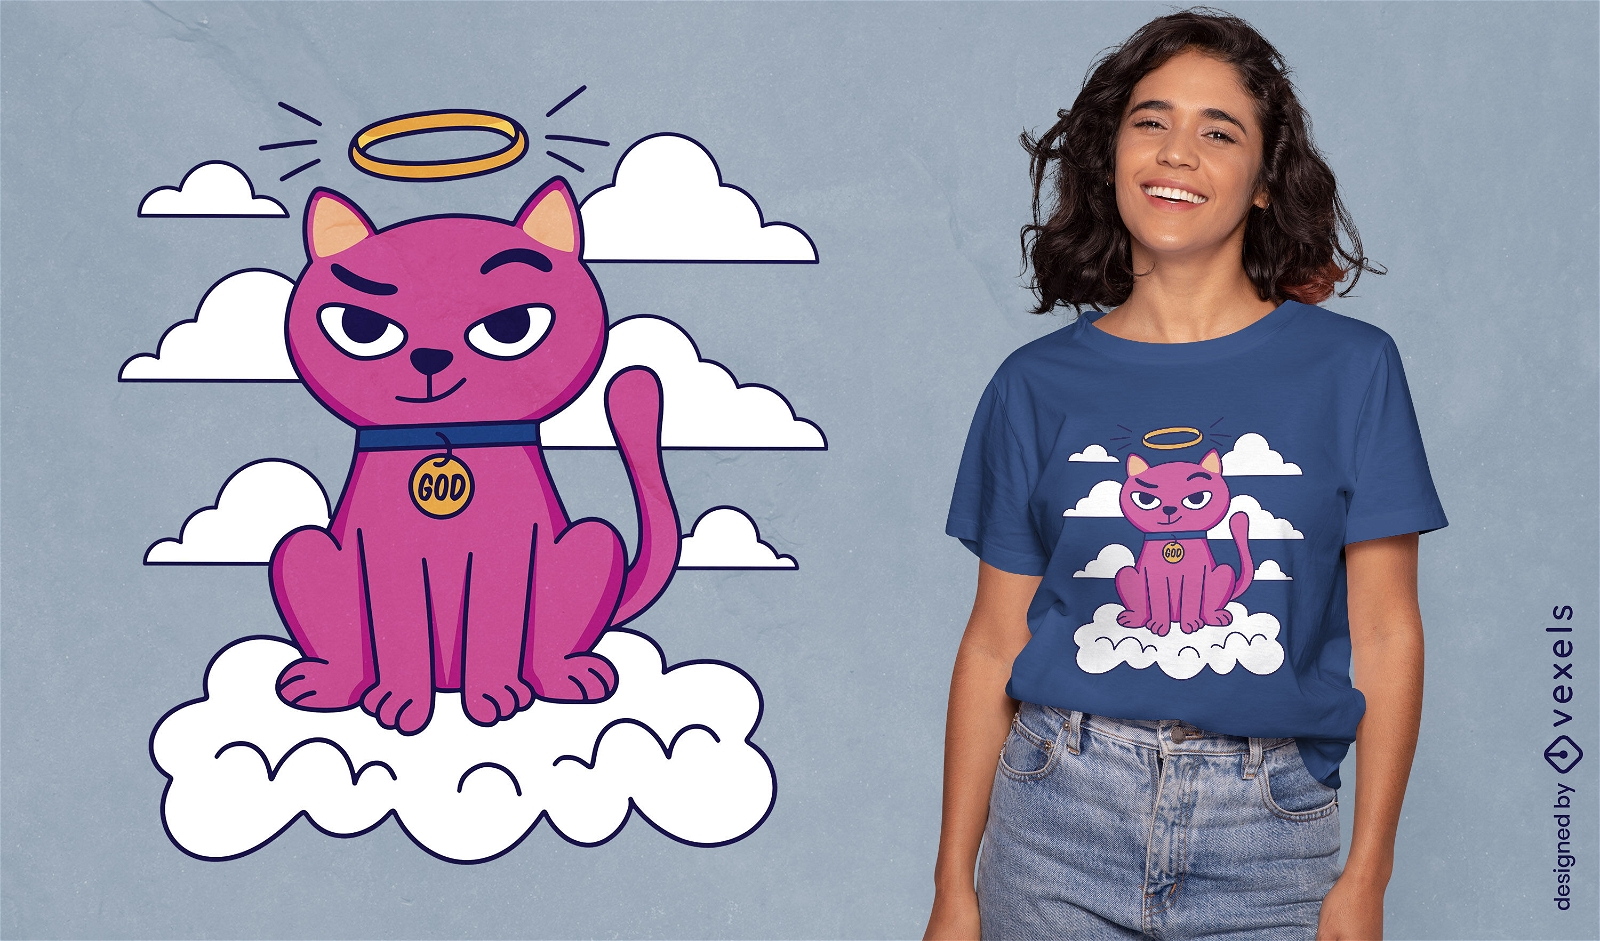 Cat god t-shirt design